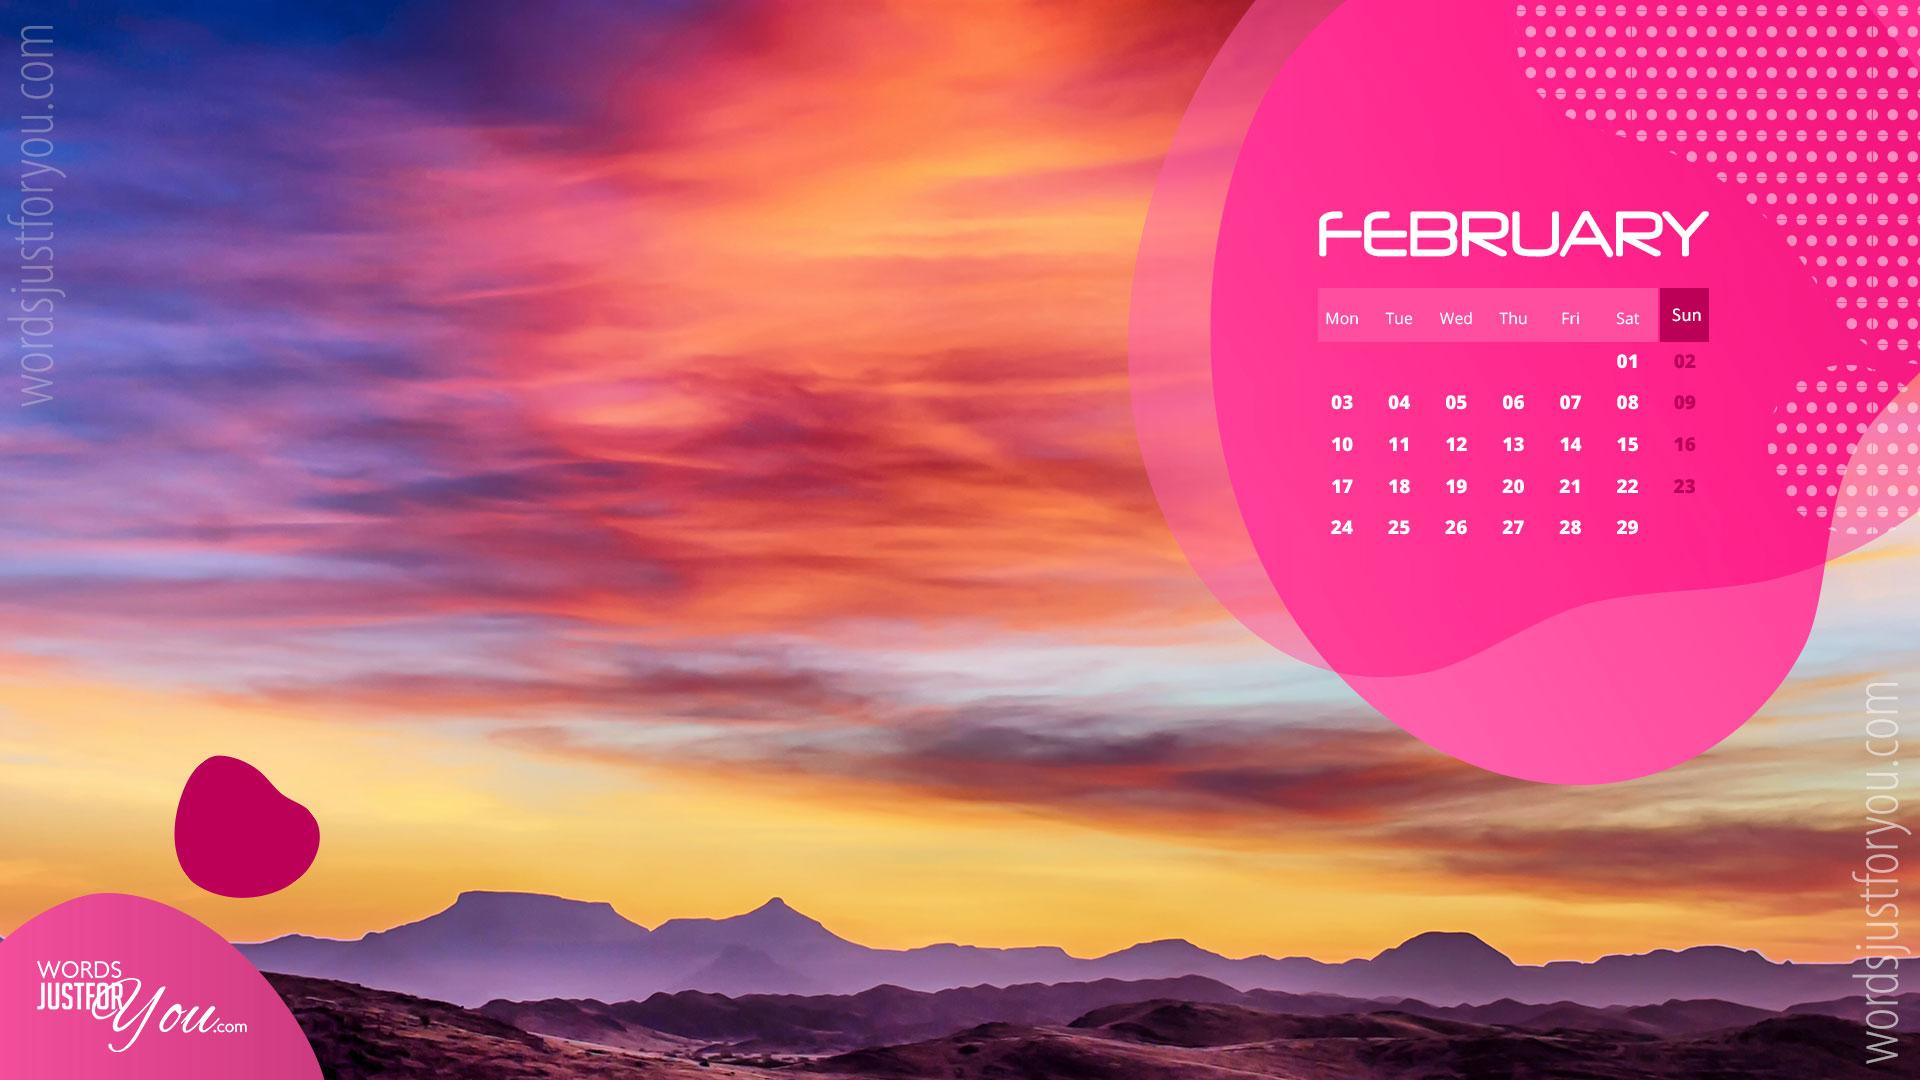 February 2021 Calendar Desktop Wallpaper 2022